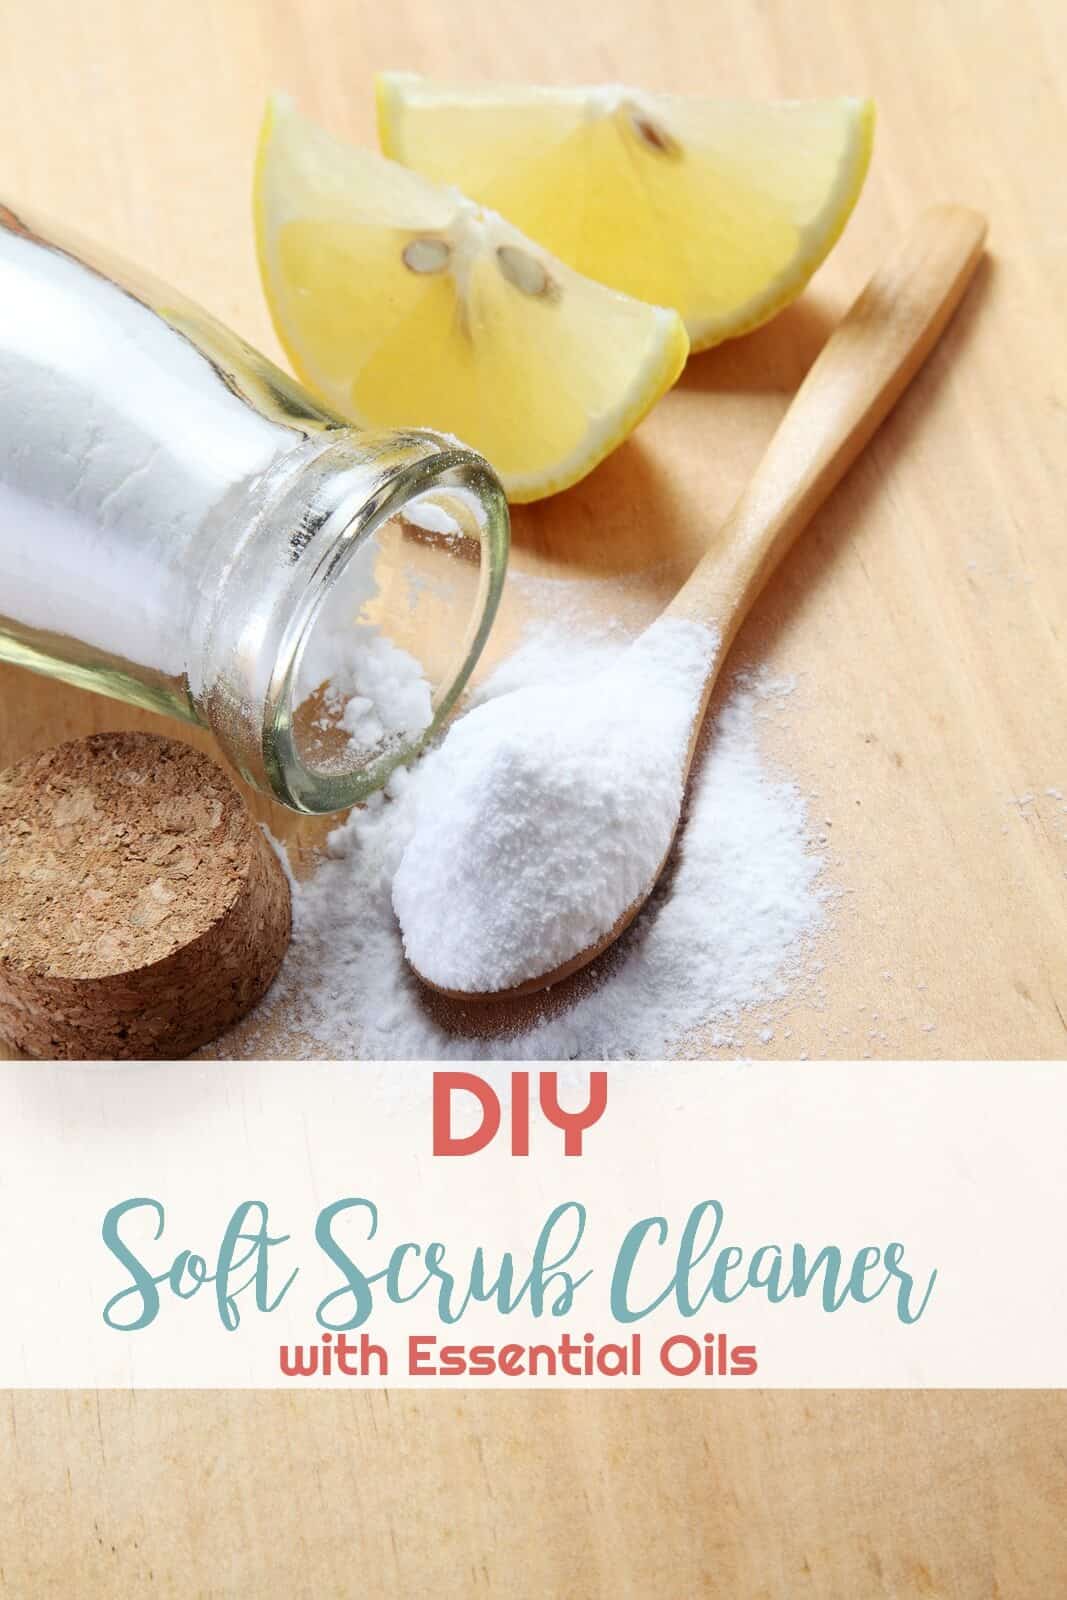 DIY Soft Scrub Cleaner with Essential Oils